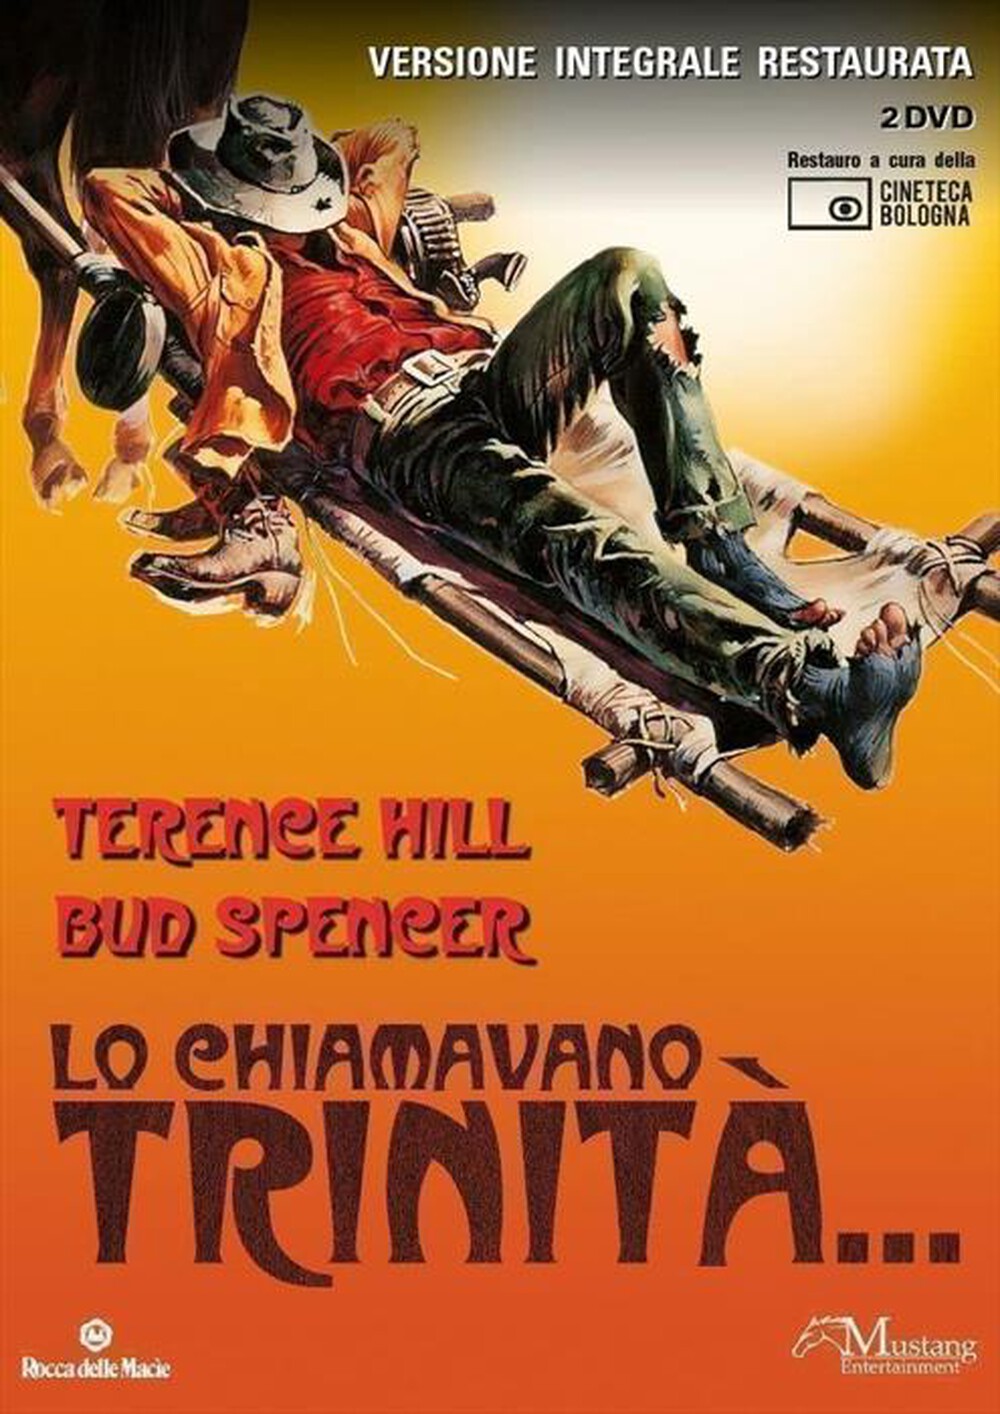 "MUSTANG ENTERTAINMENT - Lo Chiamavano Trinita' (2 Dvd)"